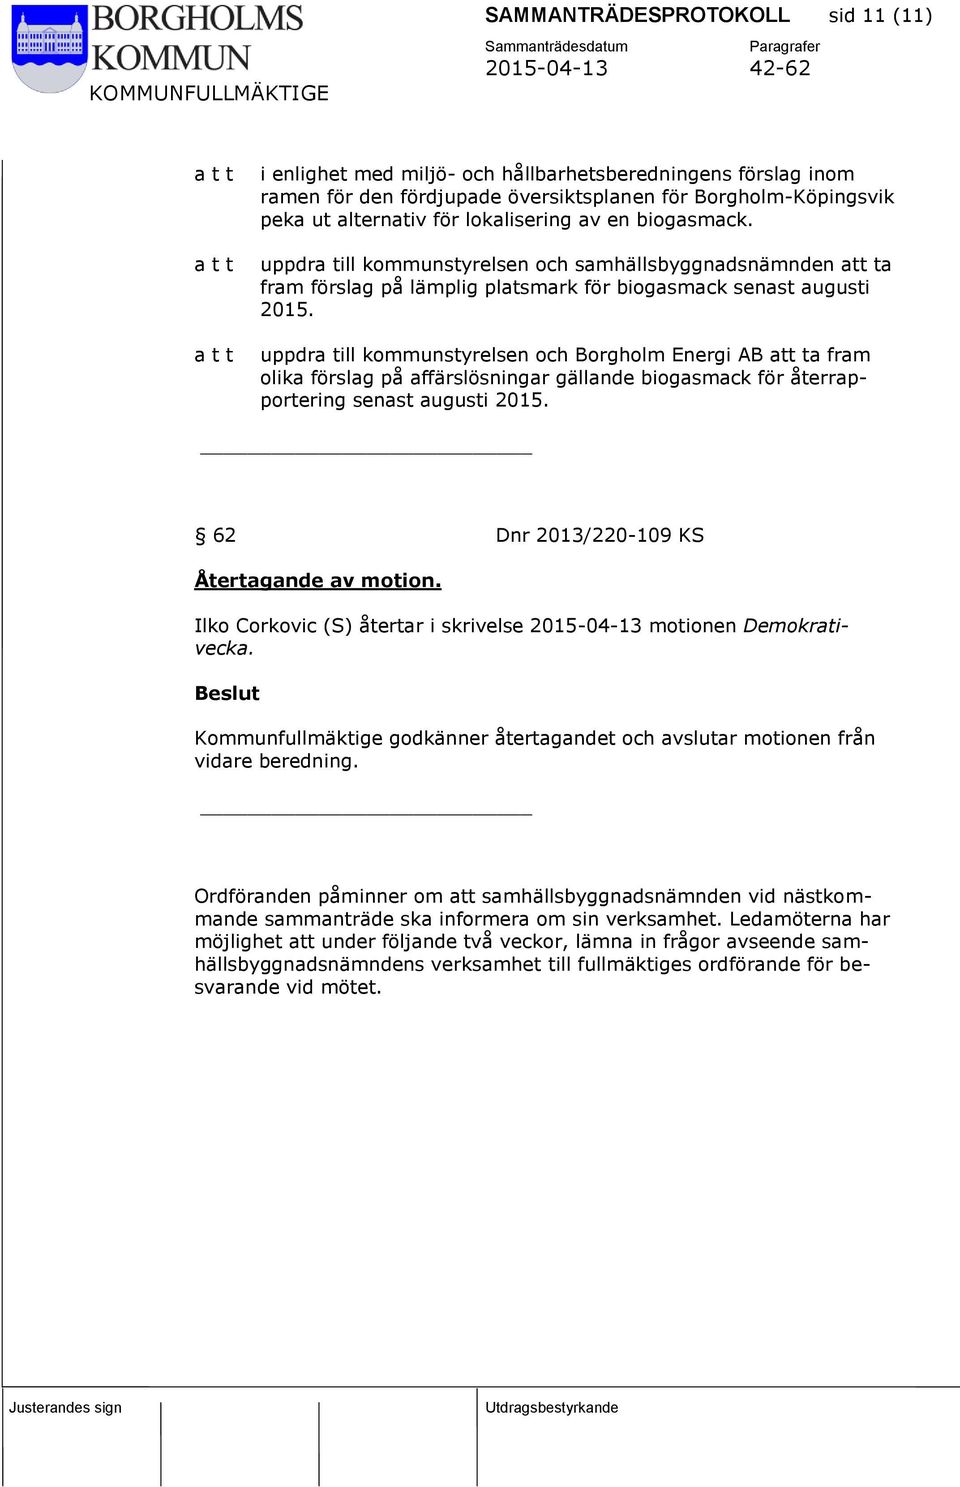 uppdra till kommunstyrelsen och Borgholm Energi AB att ta fram olika förslag på affärslösningar gällande biogasmack för återrapportering senast augusti 2015.